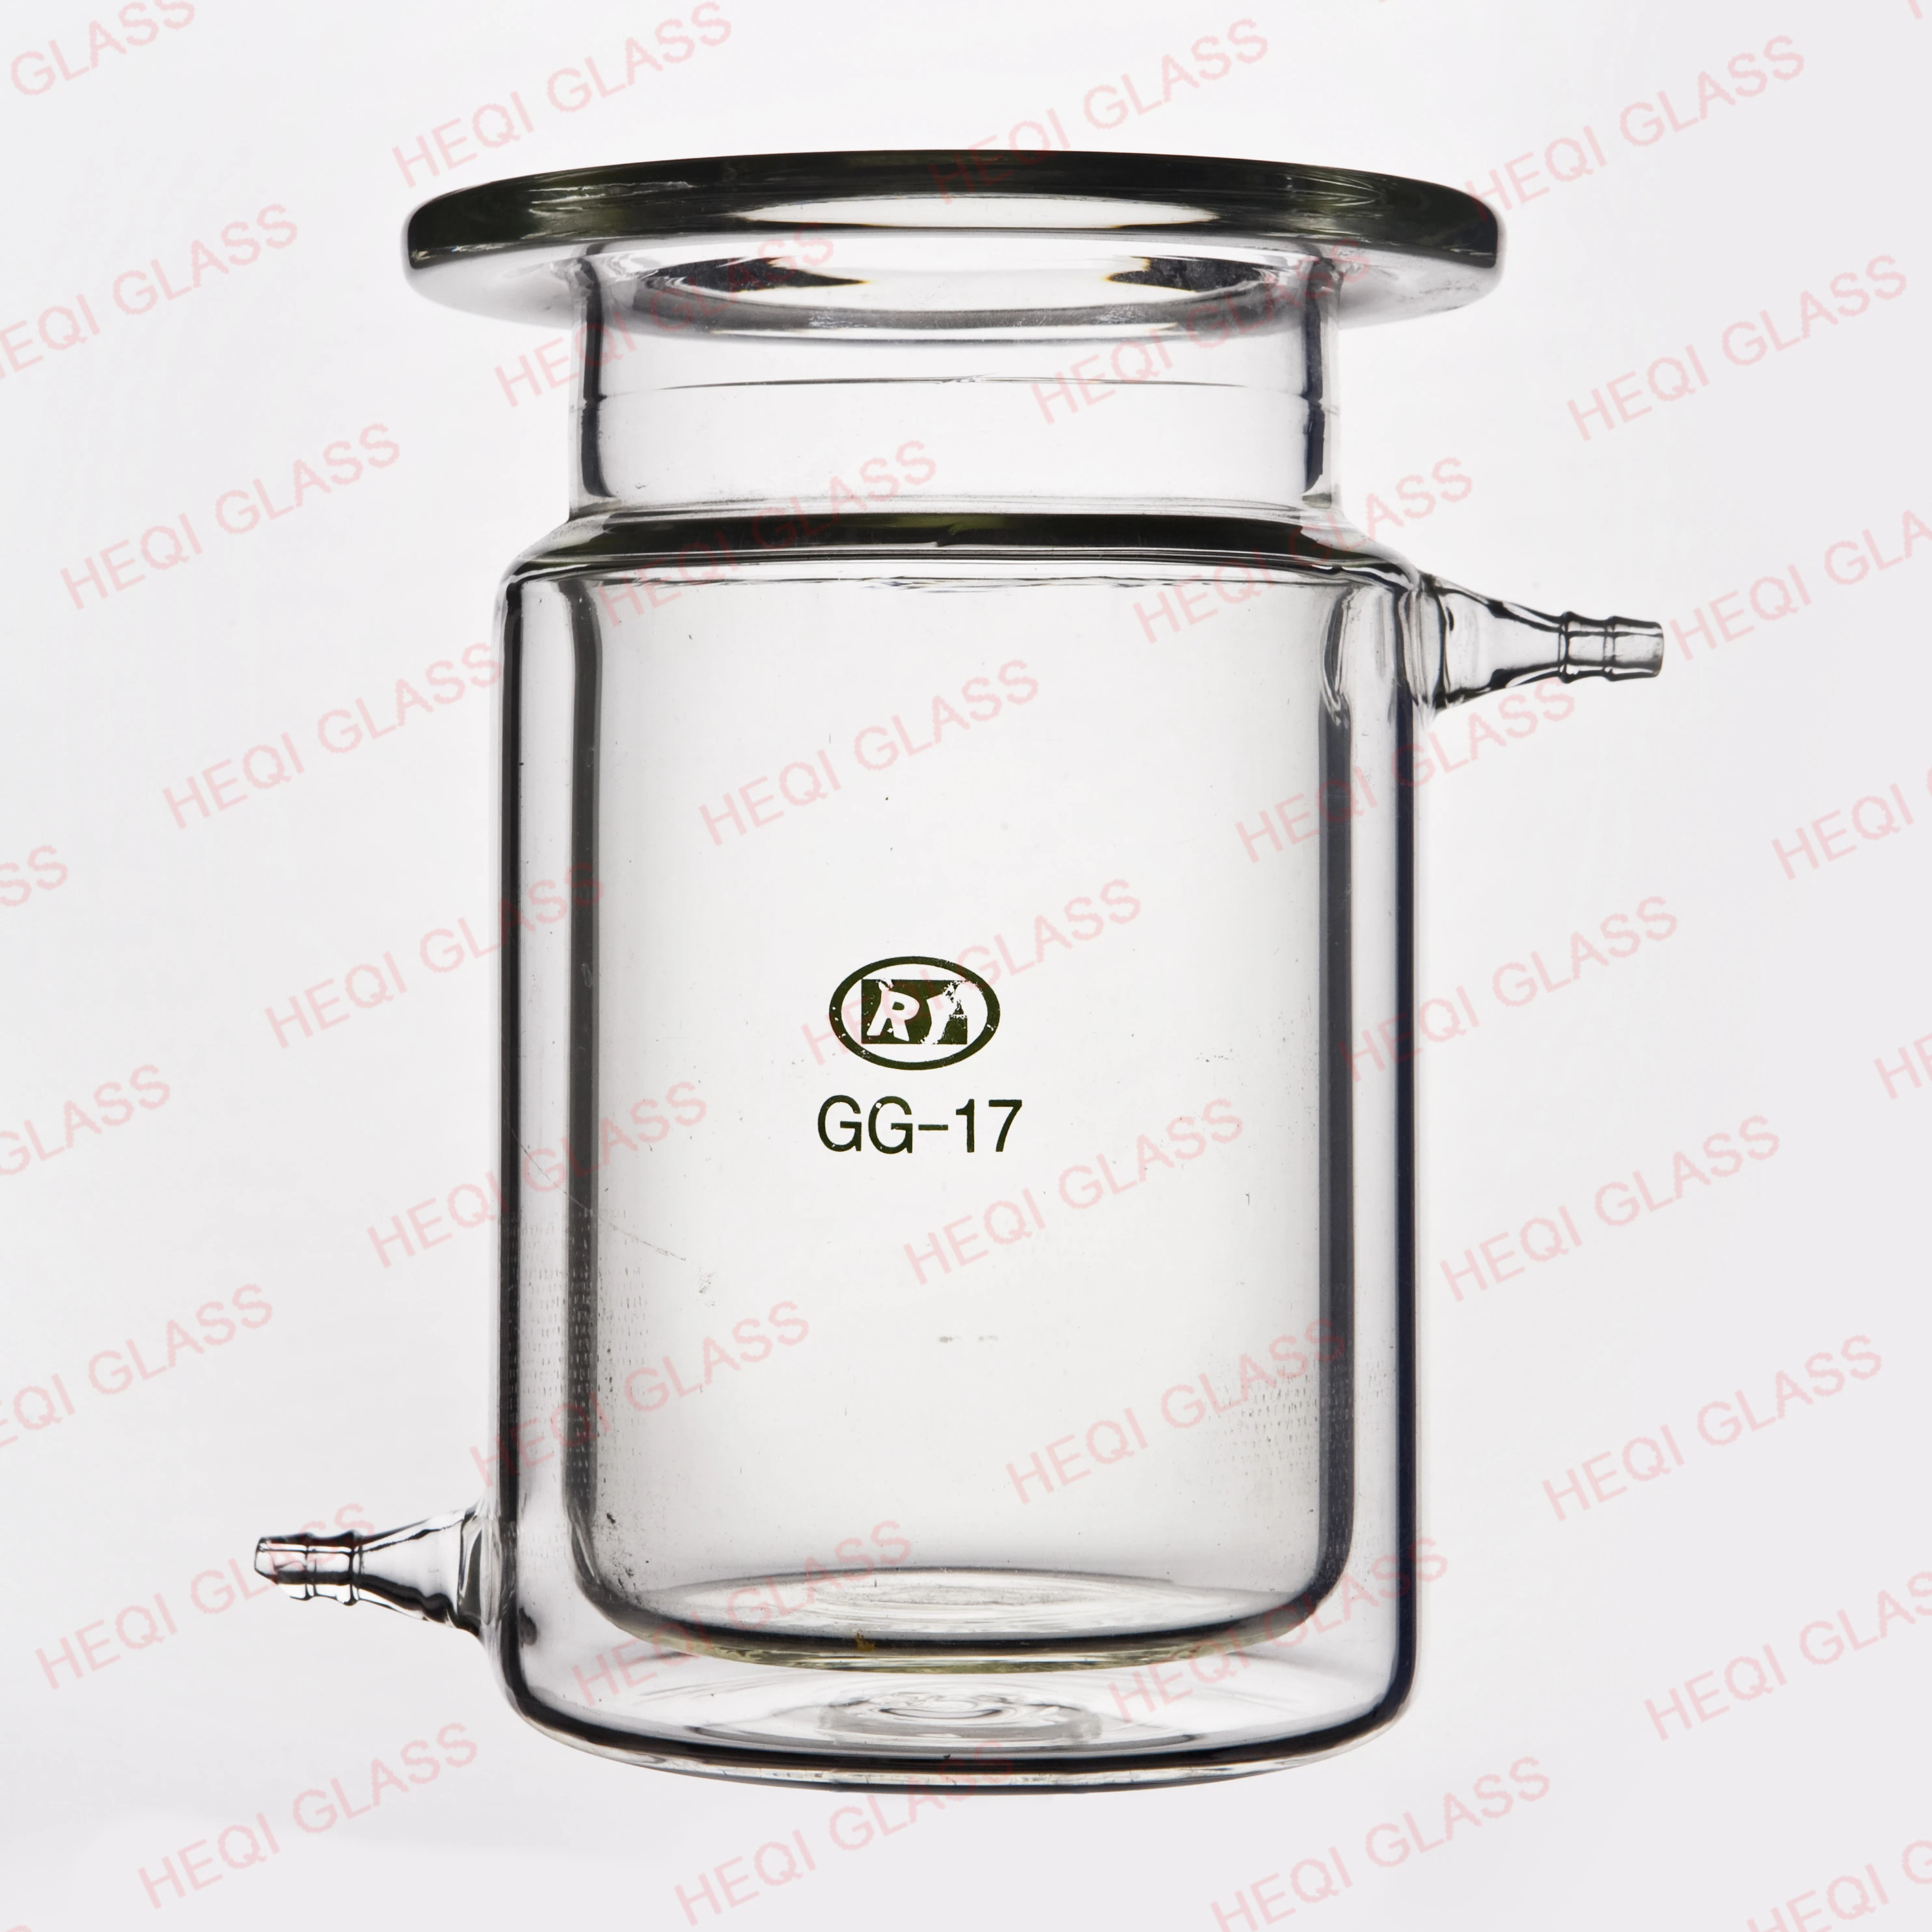 Lab Glassware Glass Barrel-Shape Jacketed Reaction Flask Vessel